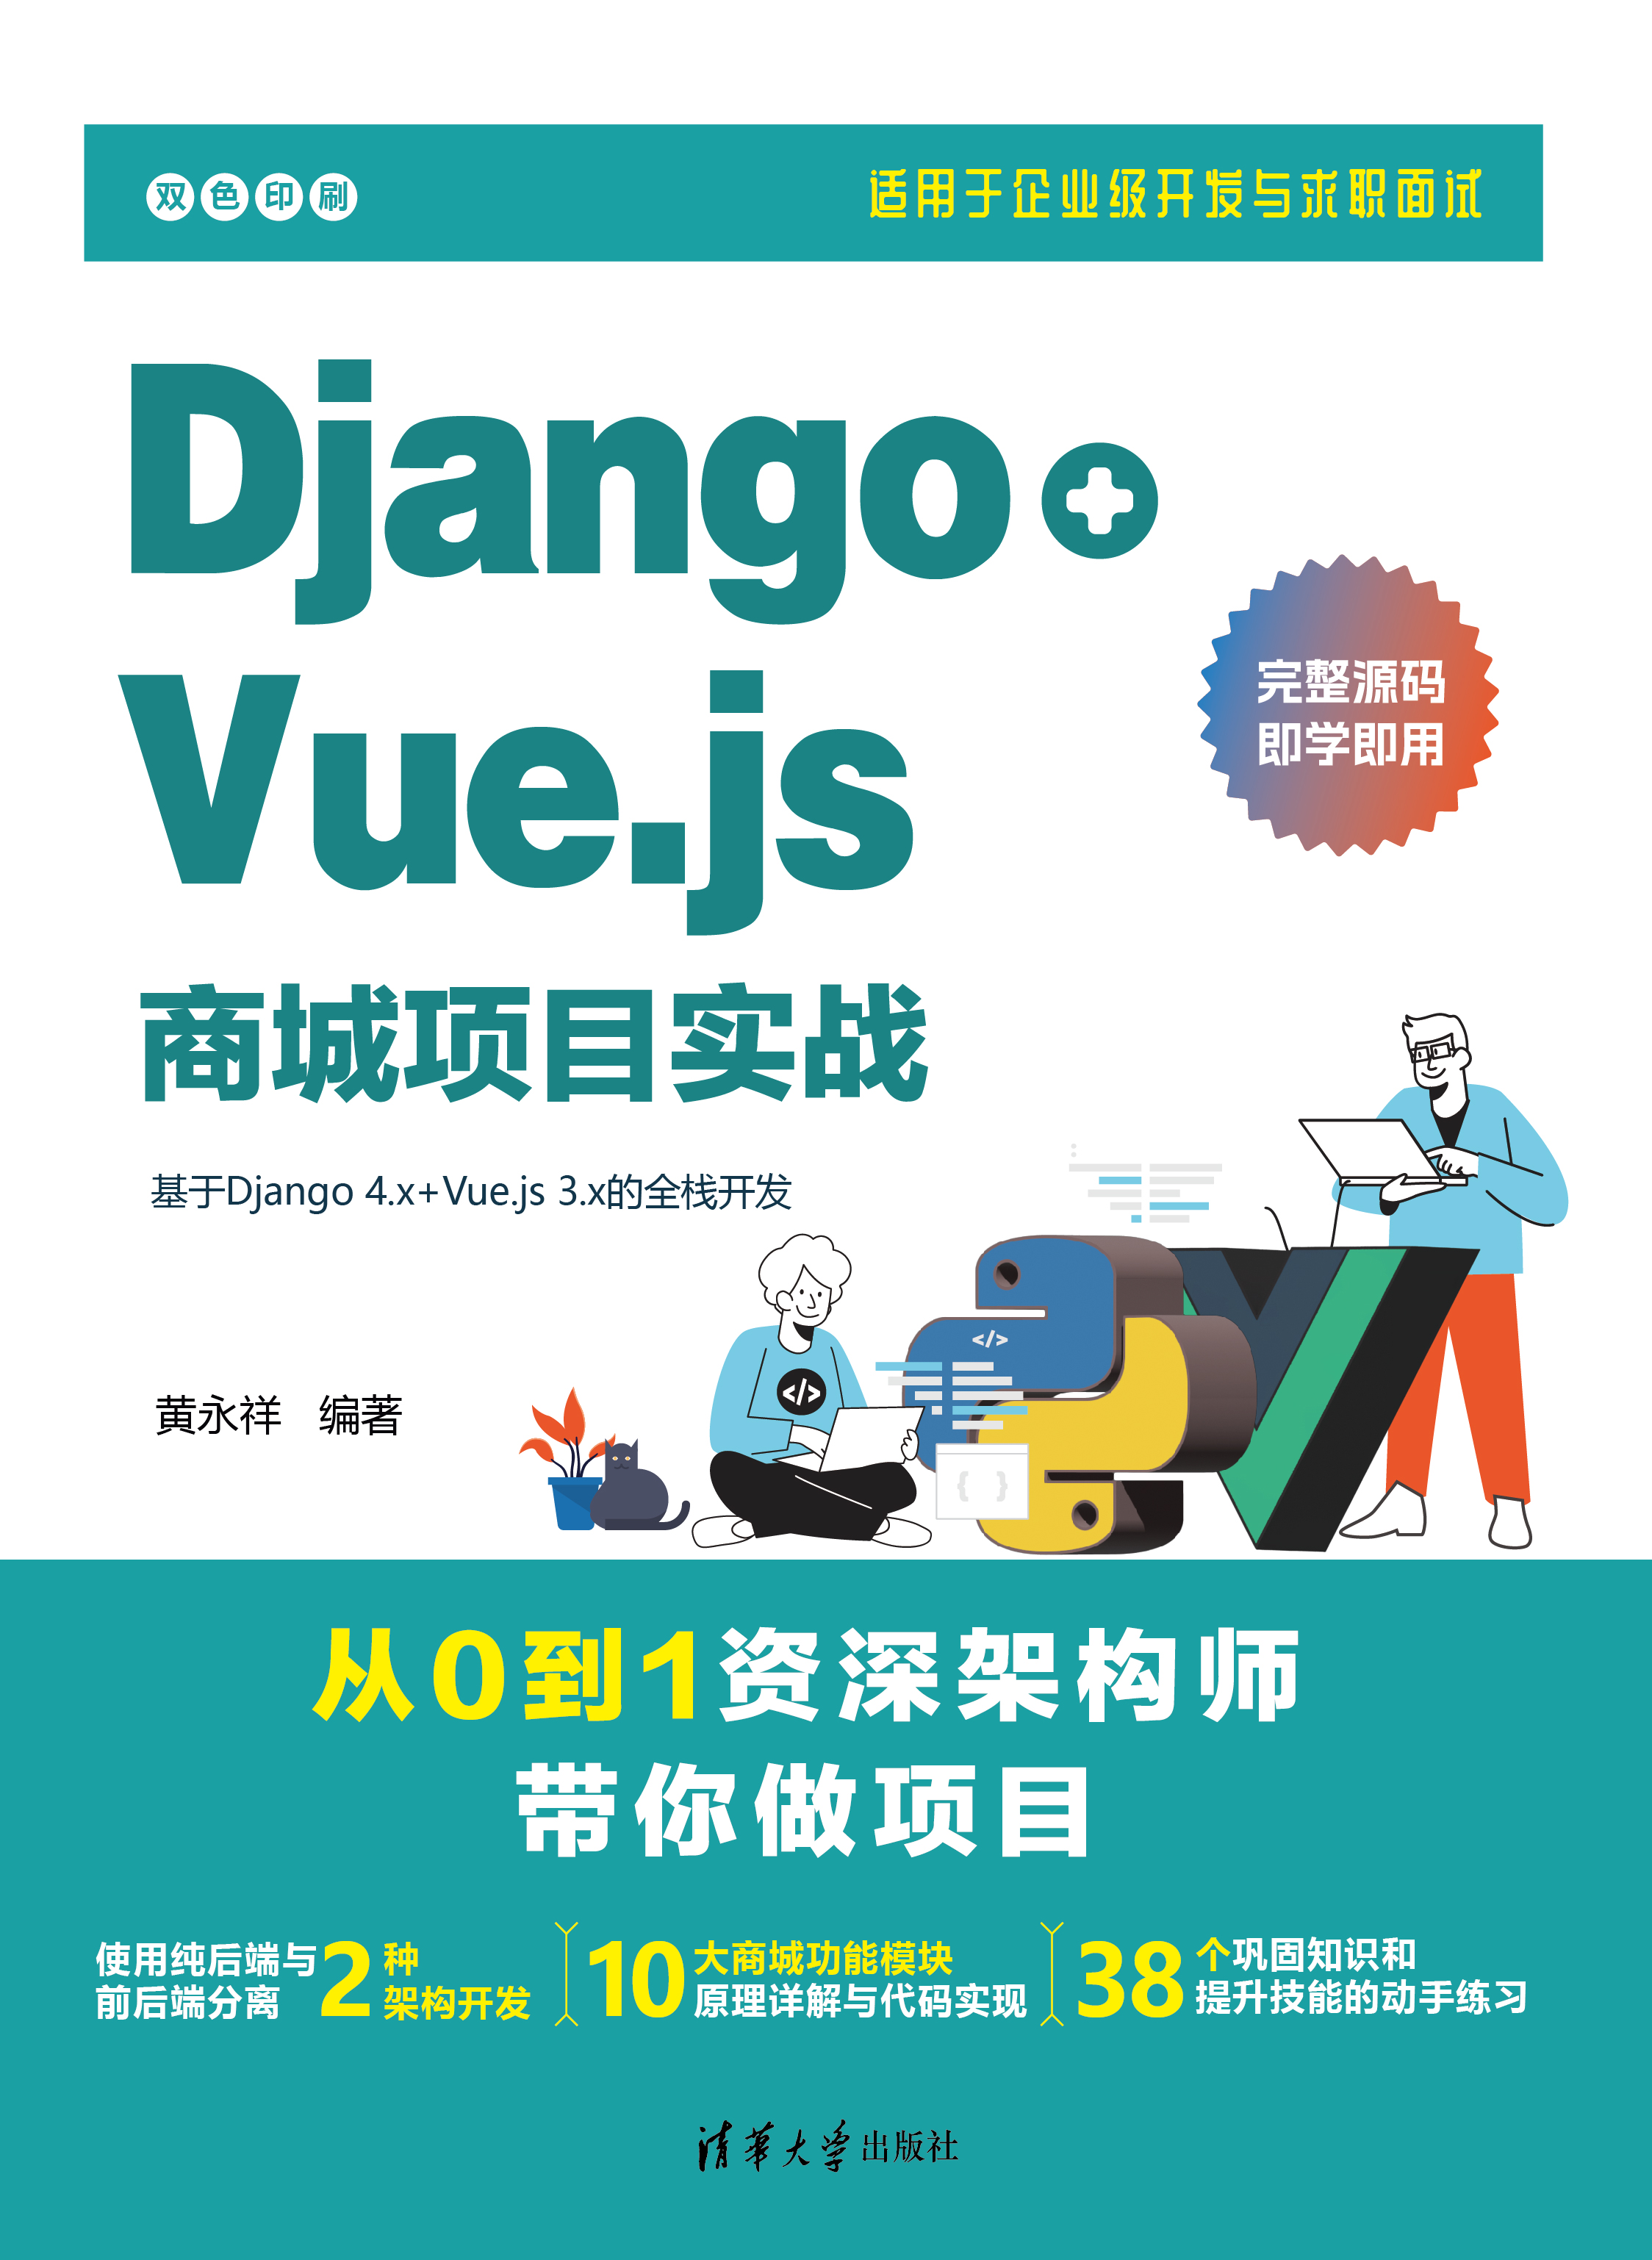 『赠书第 2 期』- 『Django+Vue.js商城项目实战』